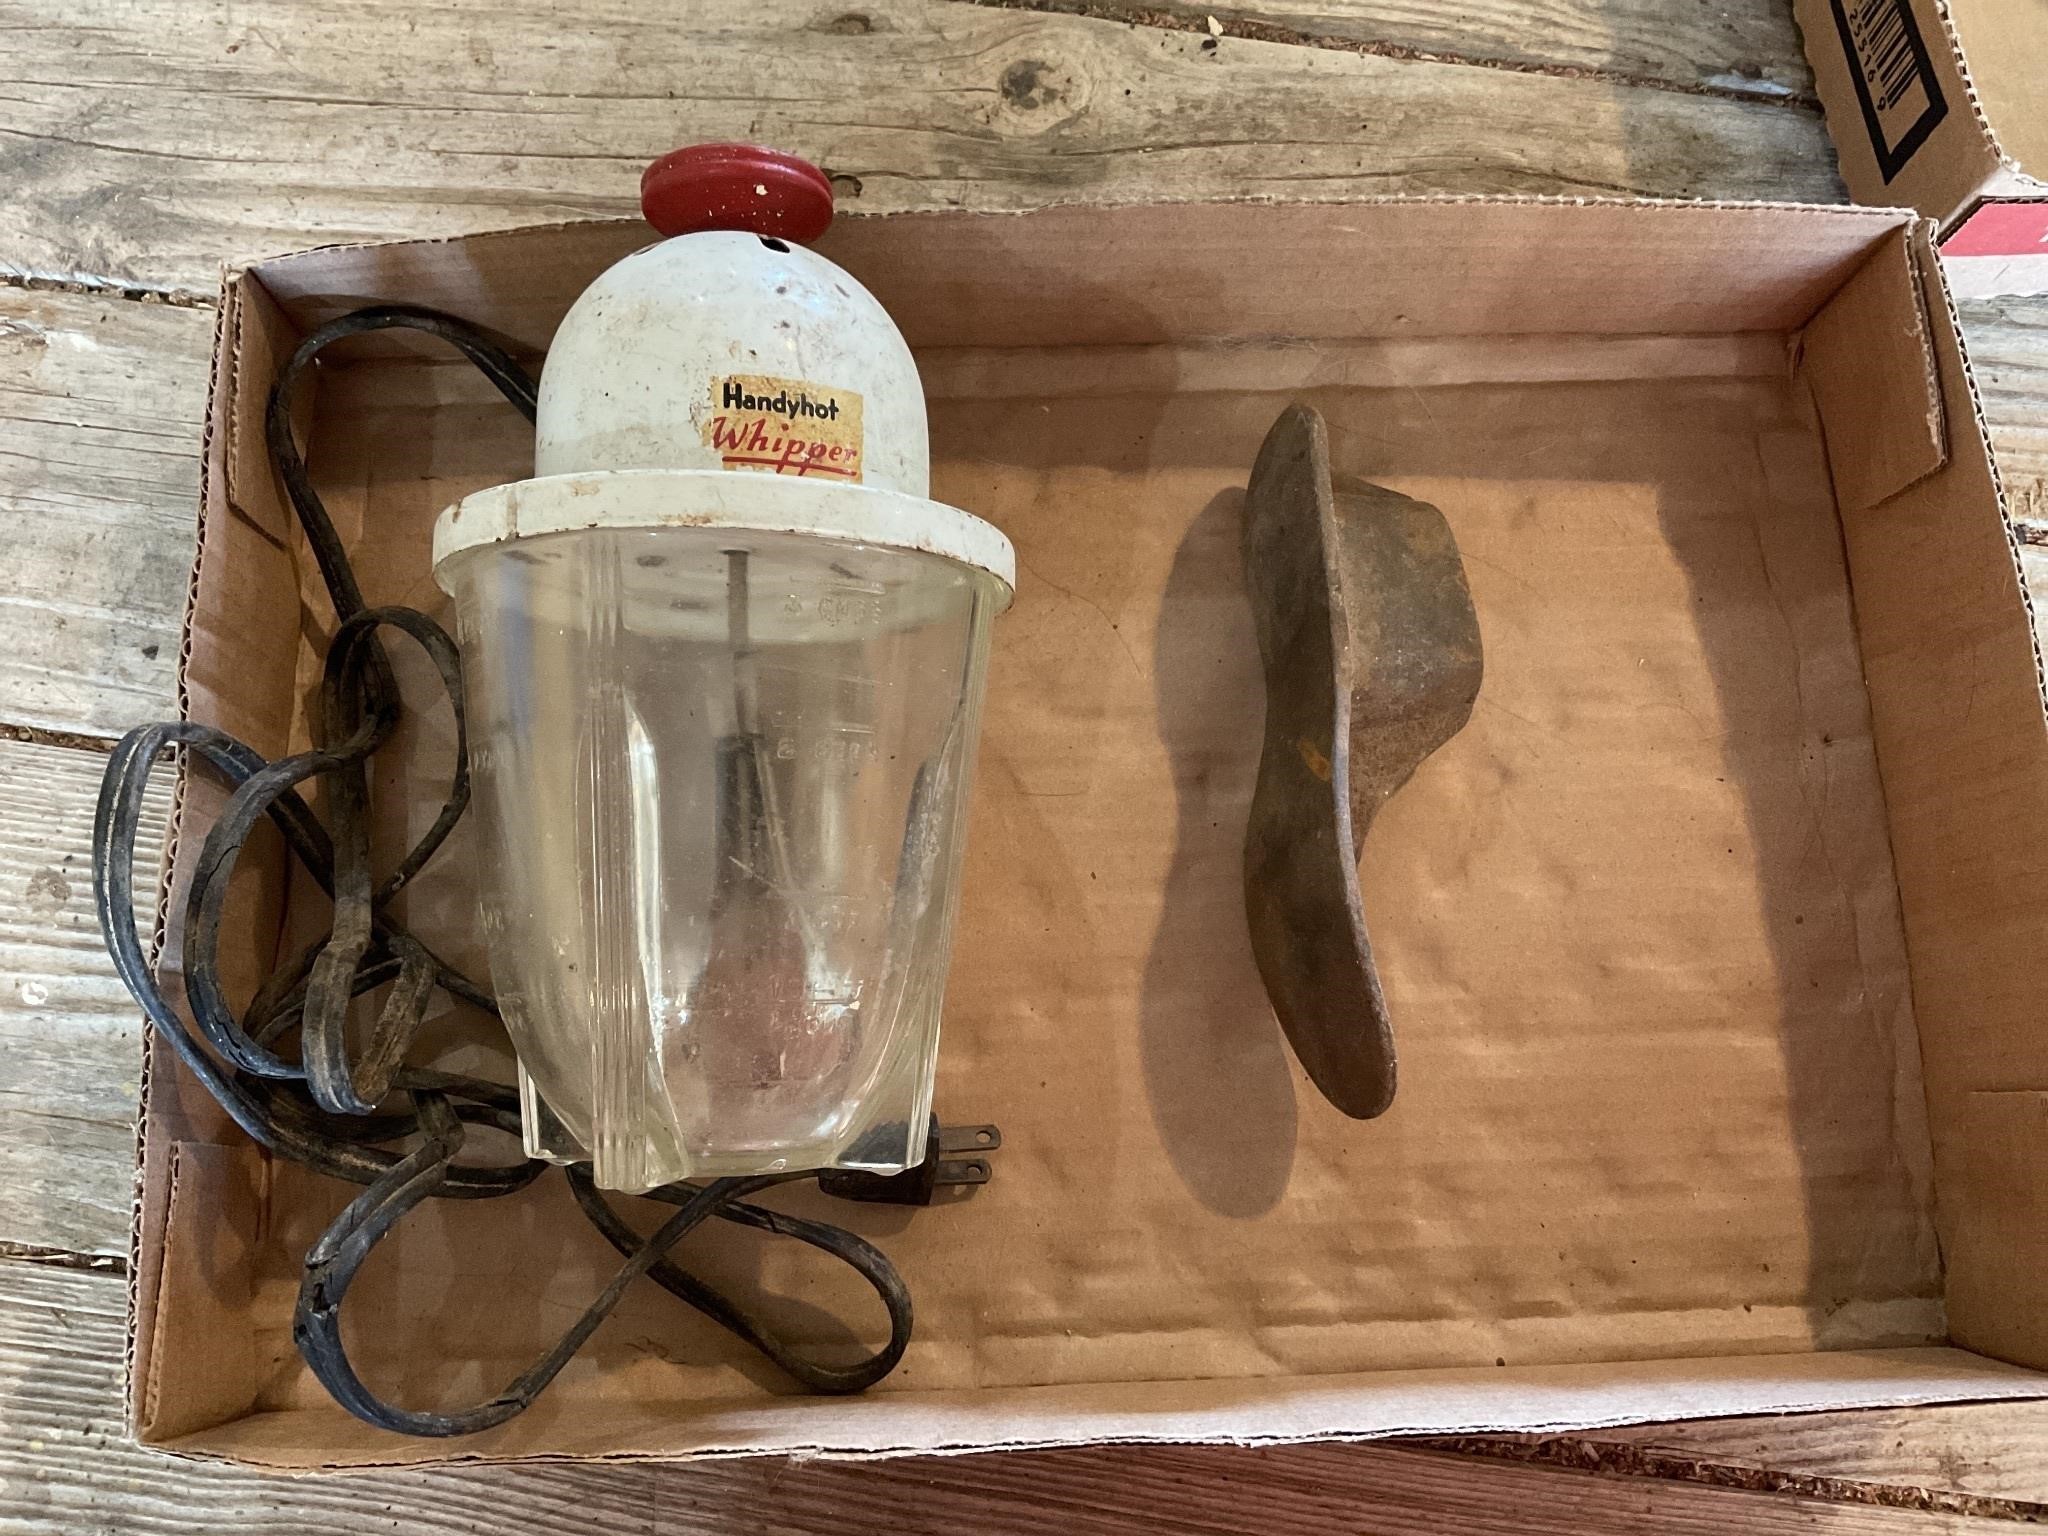 Antique Handy Hot whipper cobbler’s shoe iron